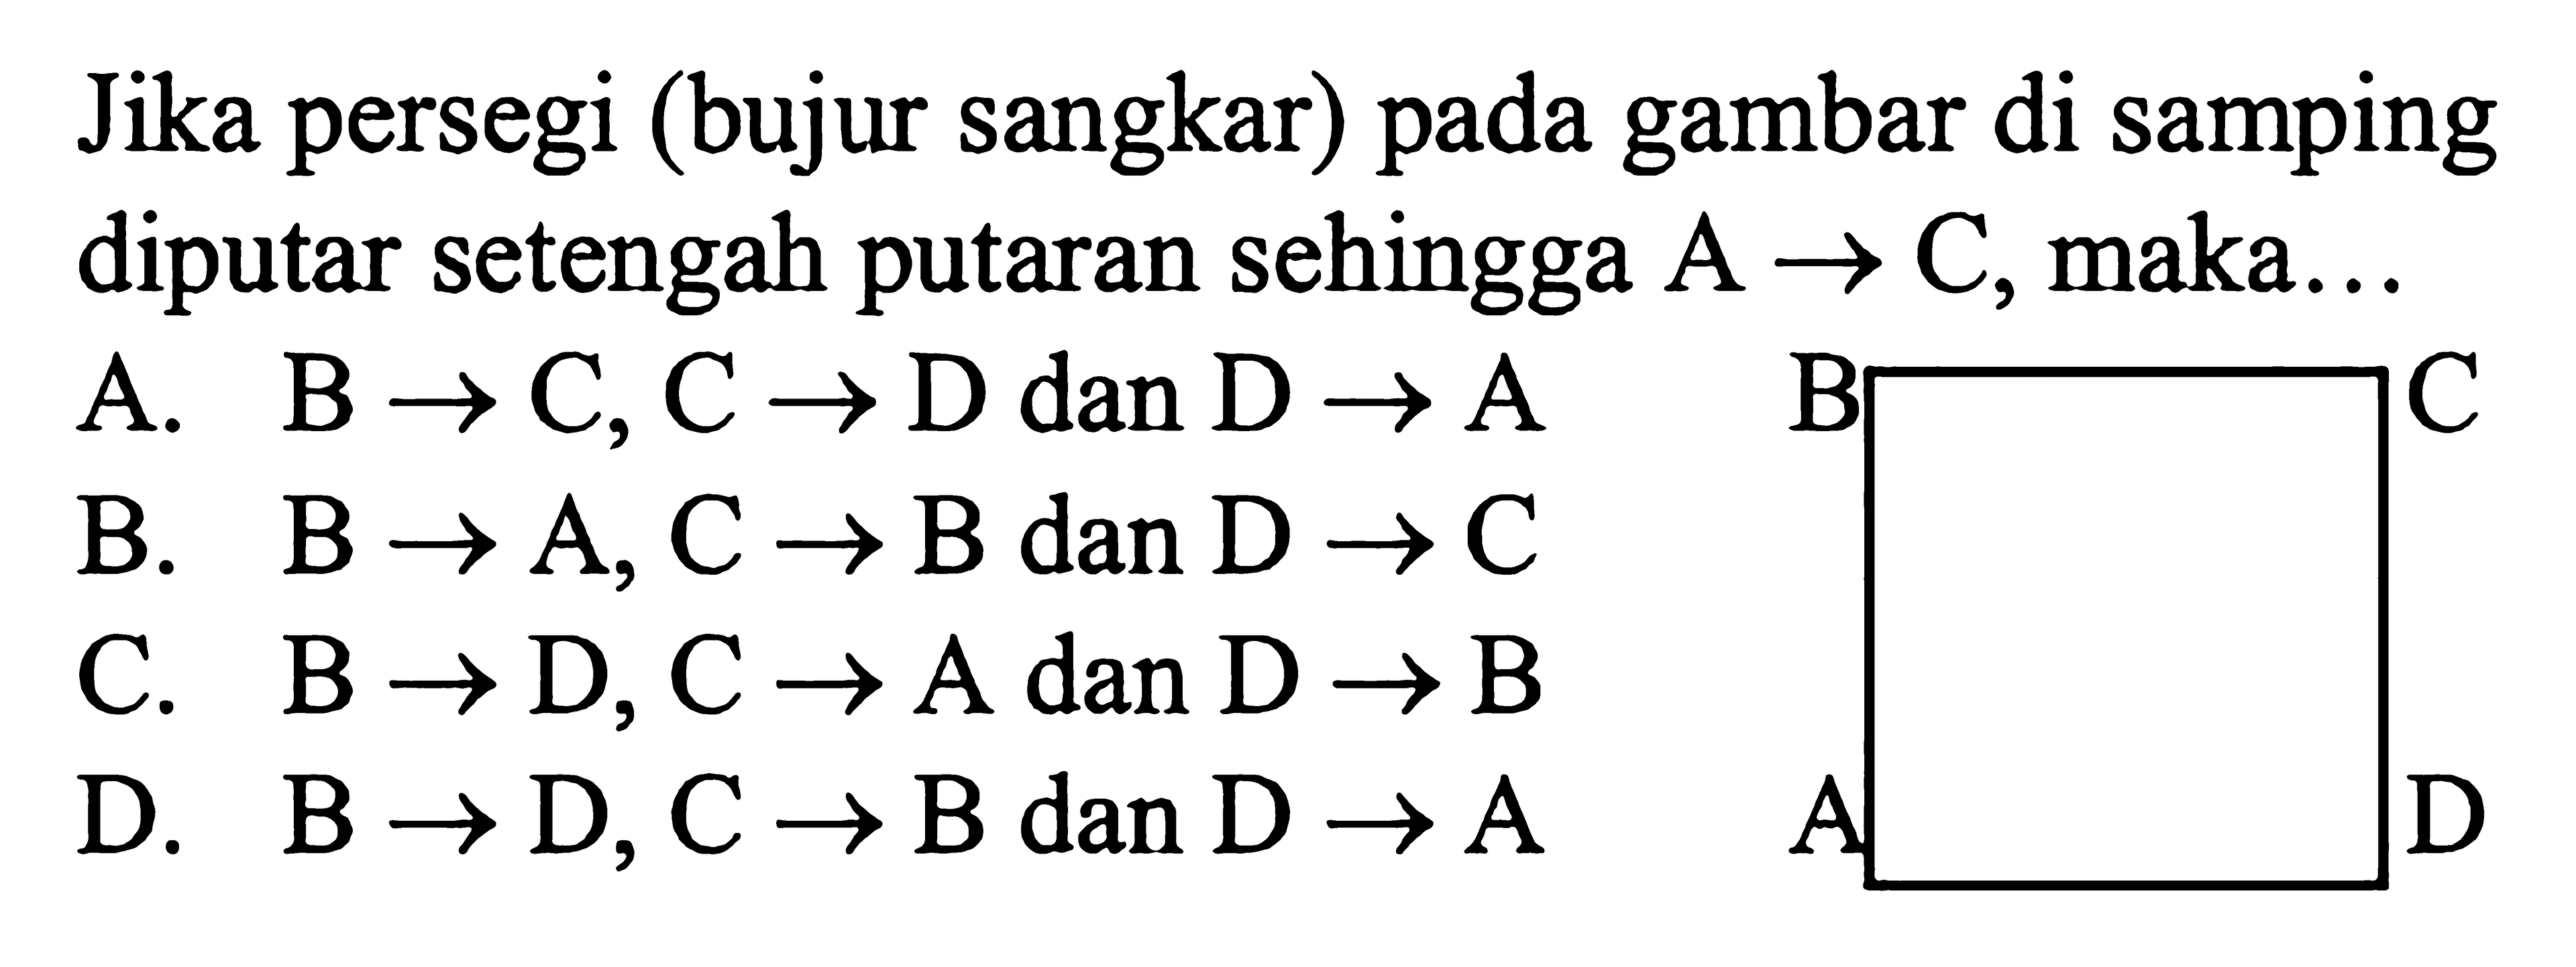 Jika persegi (bujur sangkar) pada gambar di samping diputar setengah putaran sehingga A -> C, maka...
A. B -> C, C -> D dan D -> A 
B. B -> A, C -> B dan D -> C 
C. B -> D, C -> A dan D -> B 
D. B -> D, C -> B dan D -> A 